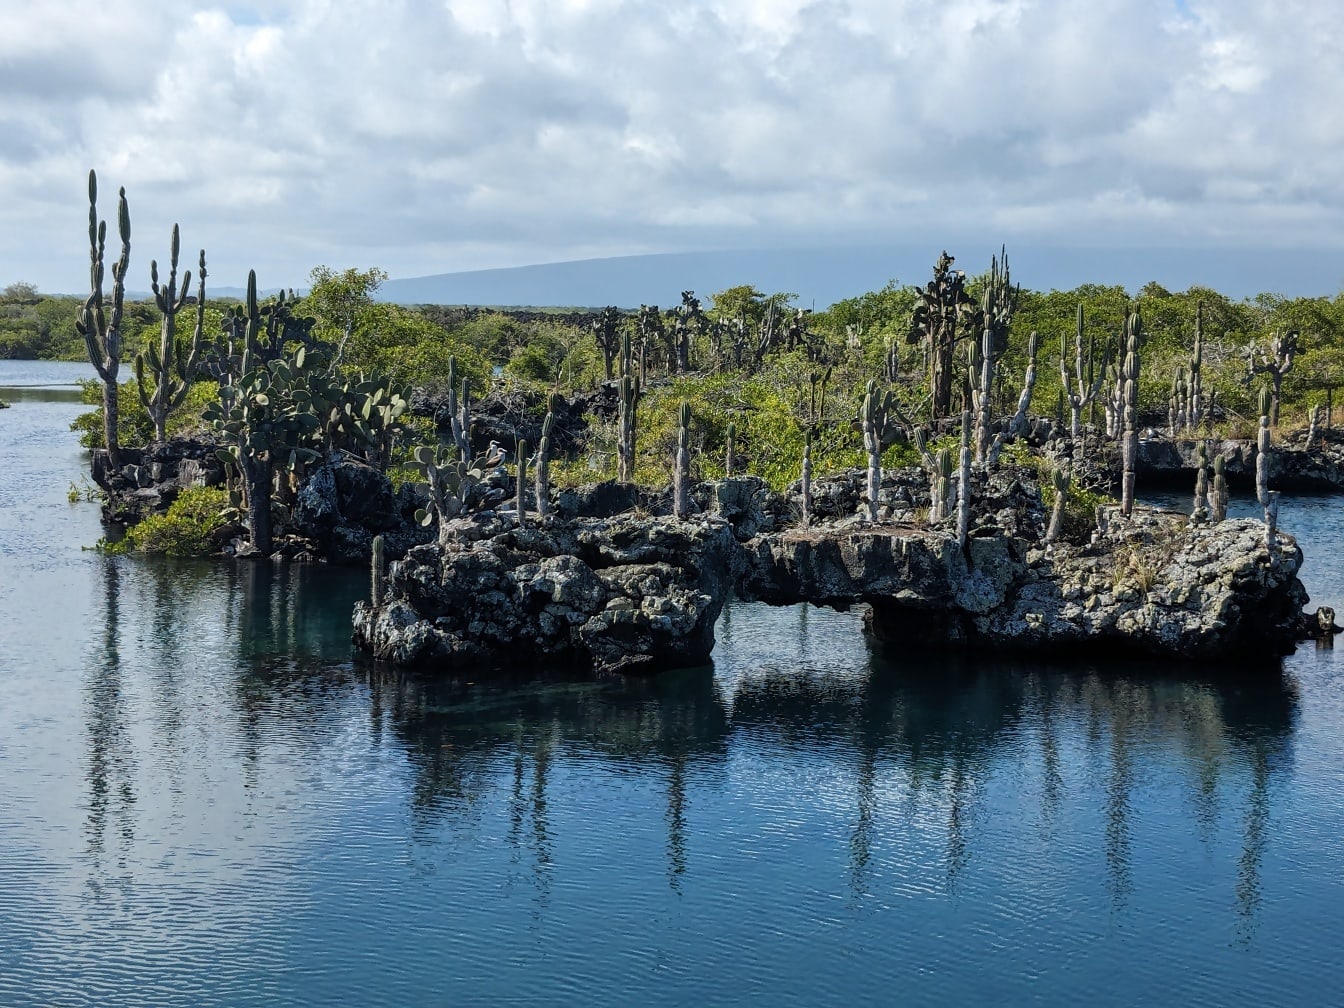 Pantai Pulau Galapagos dengan spesies kaktus endemik (Opuntia galapageias)